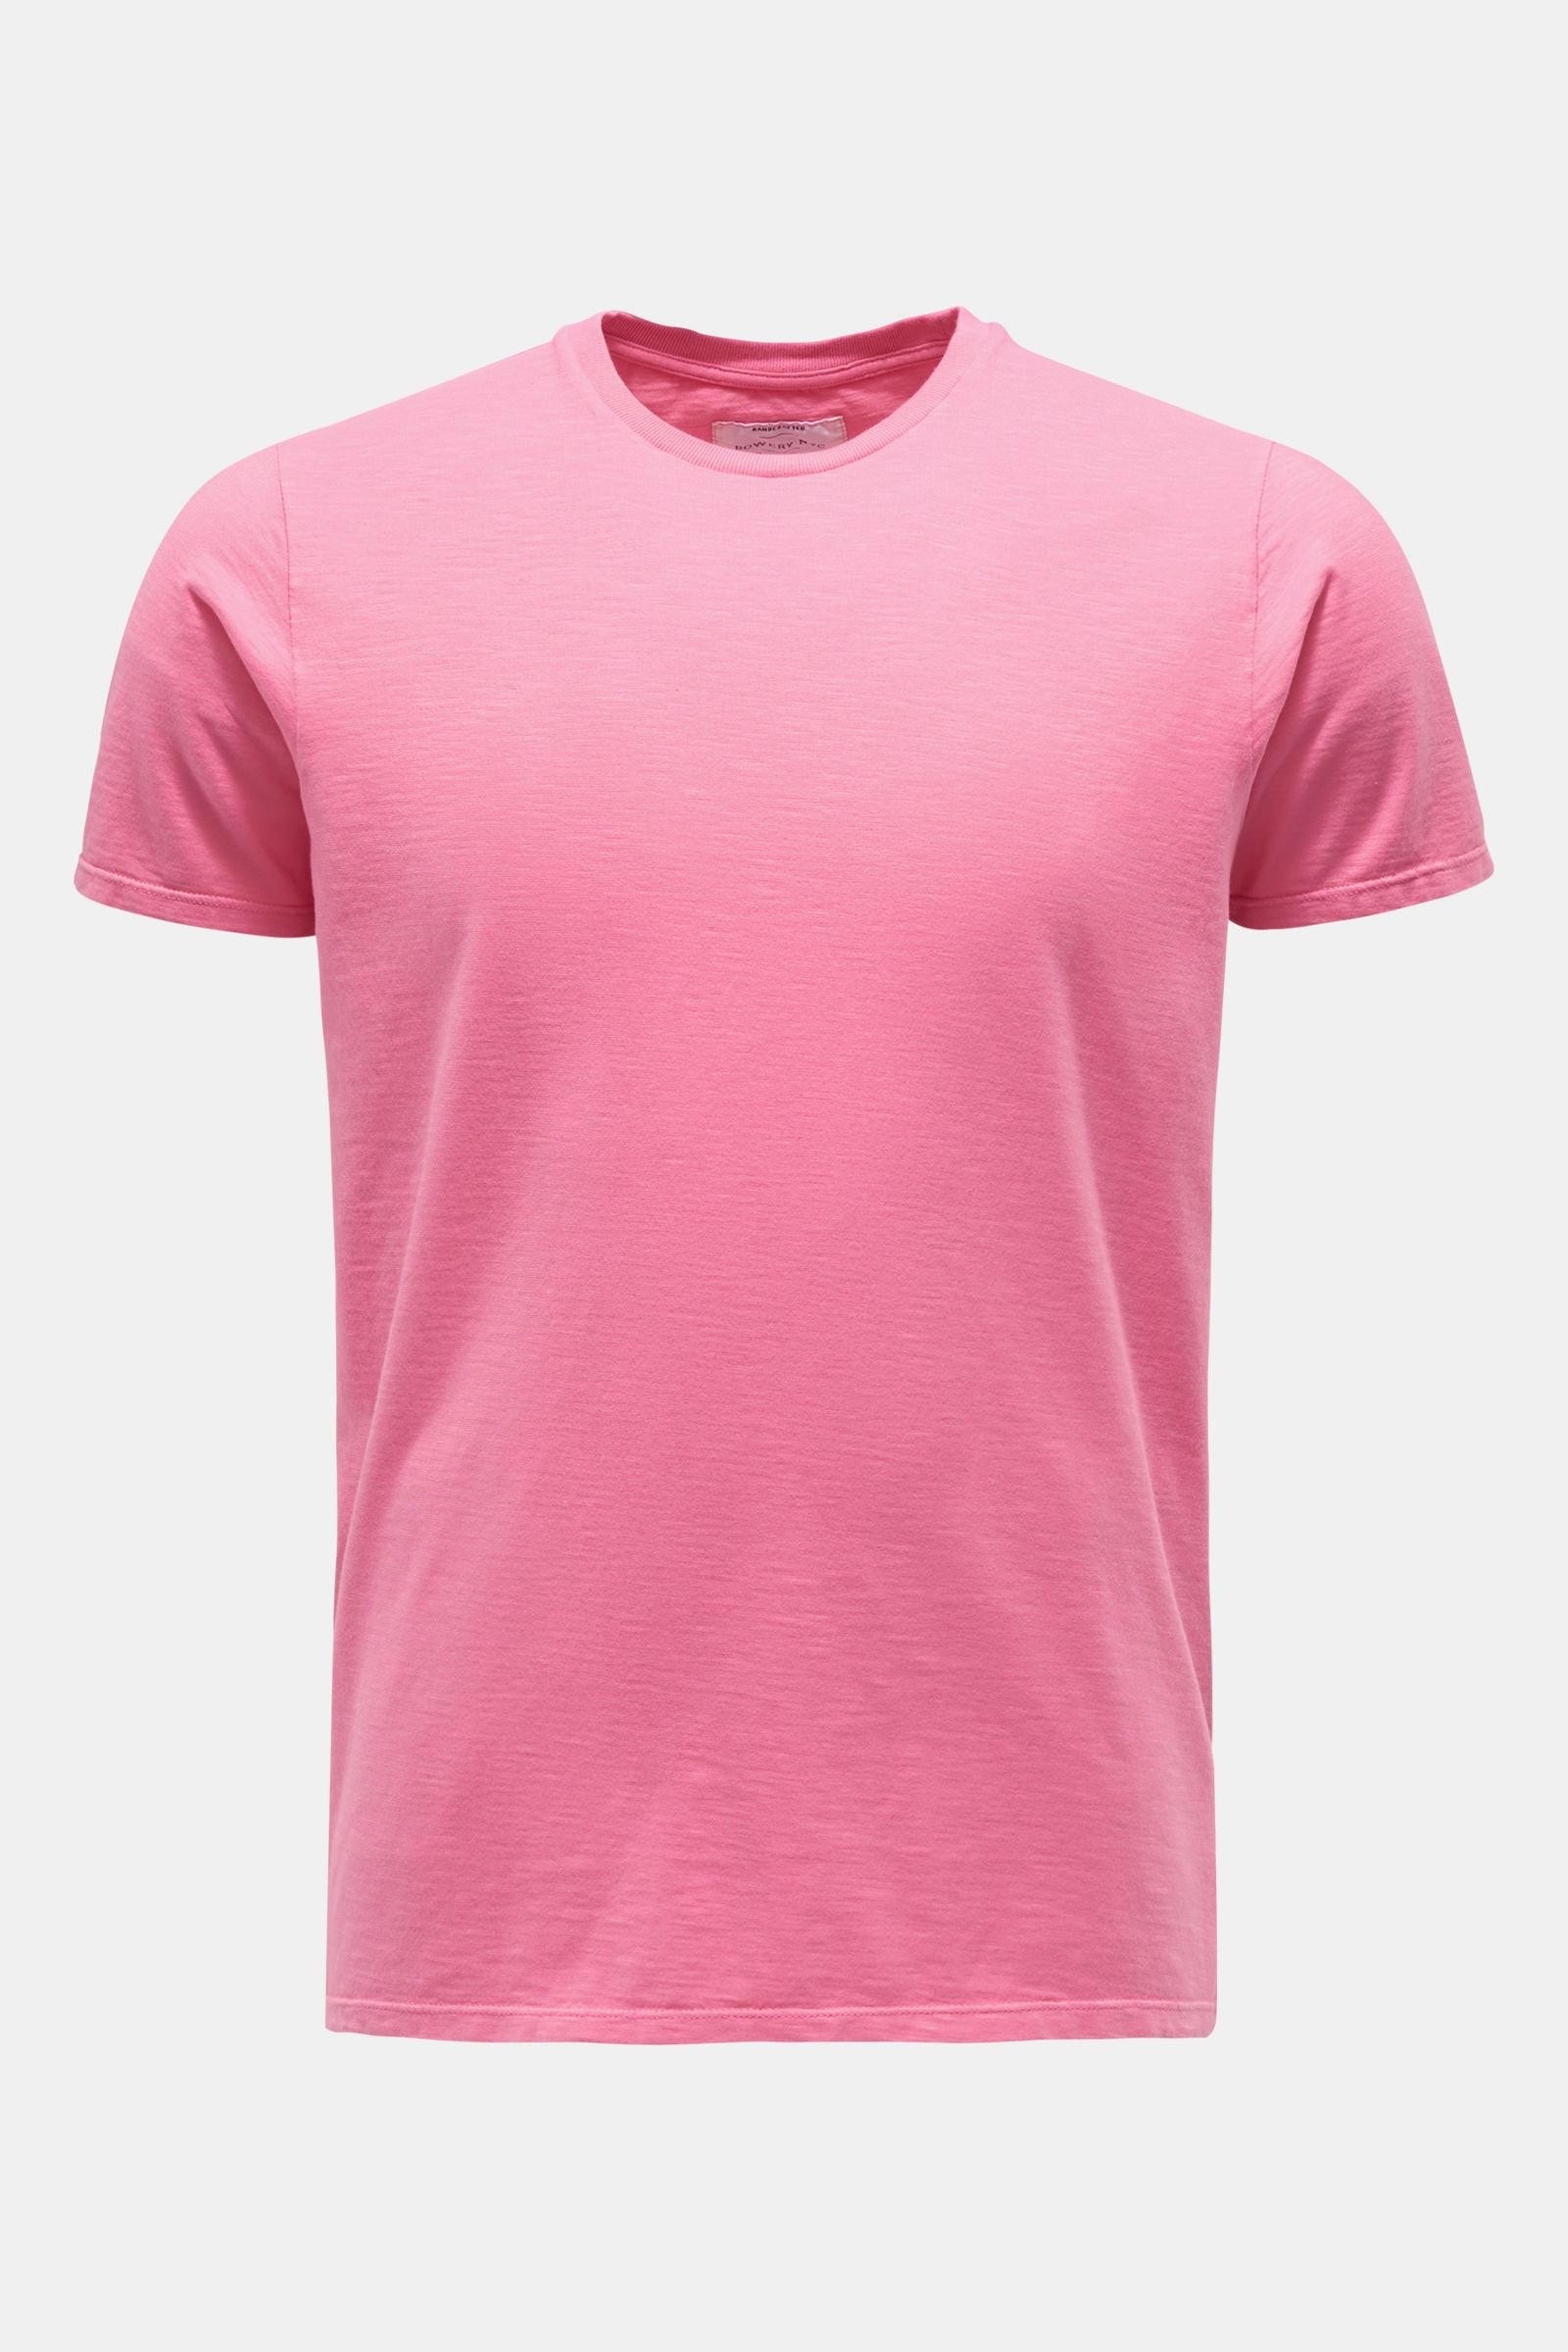 Rundhals-T-Shirt pink